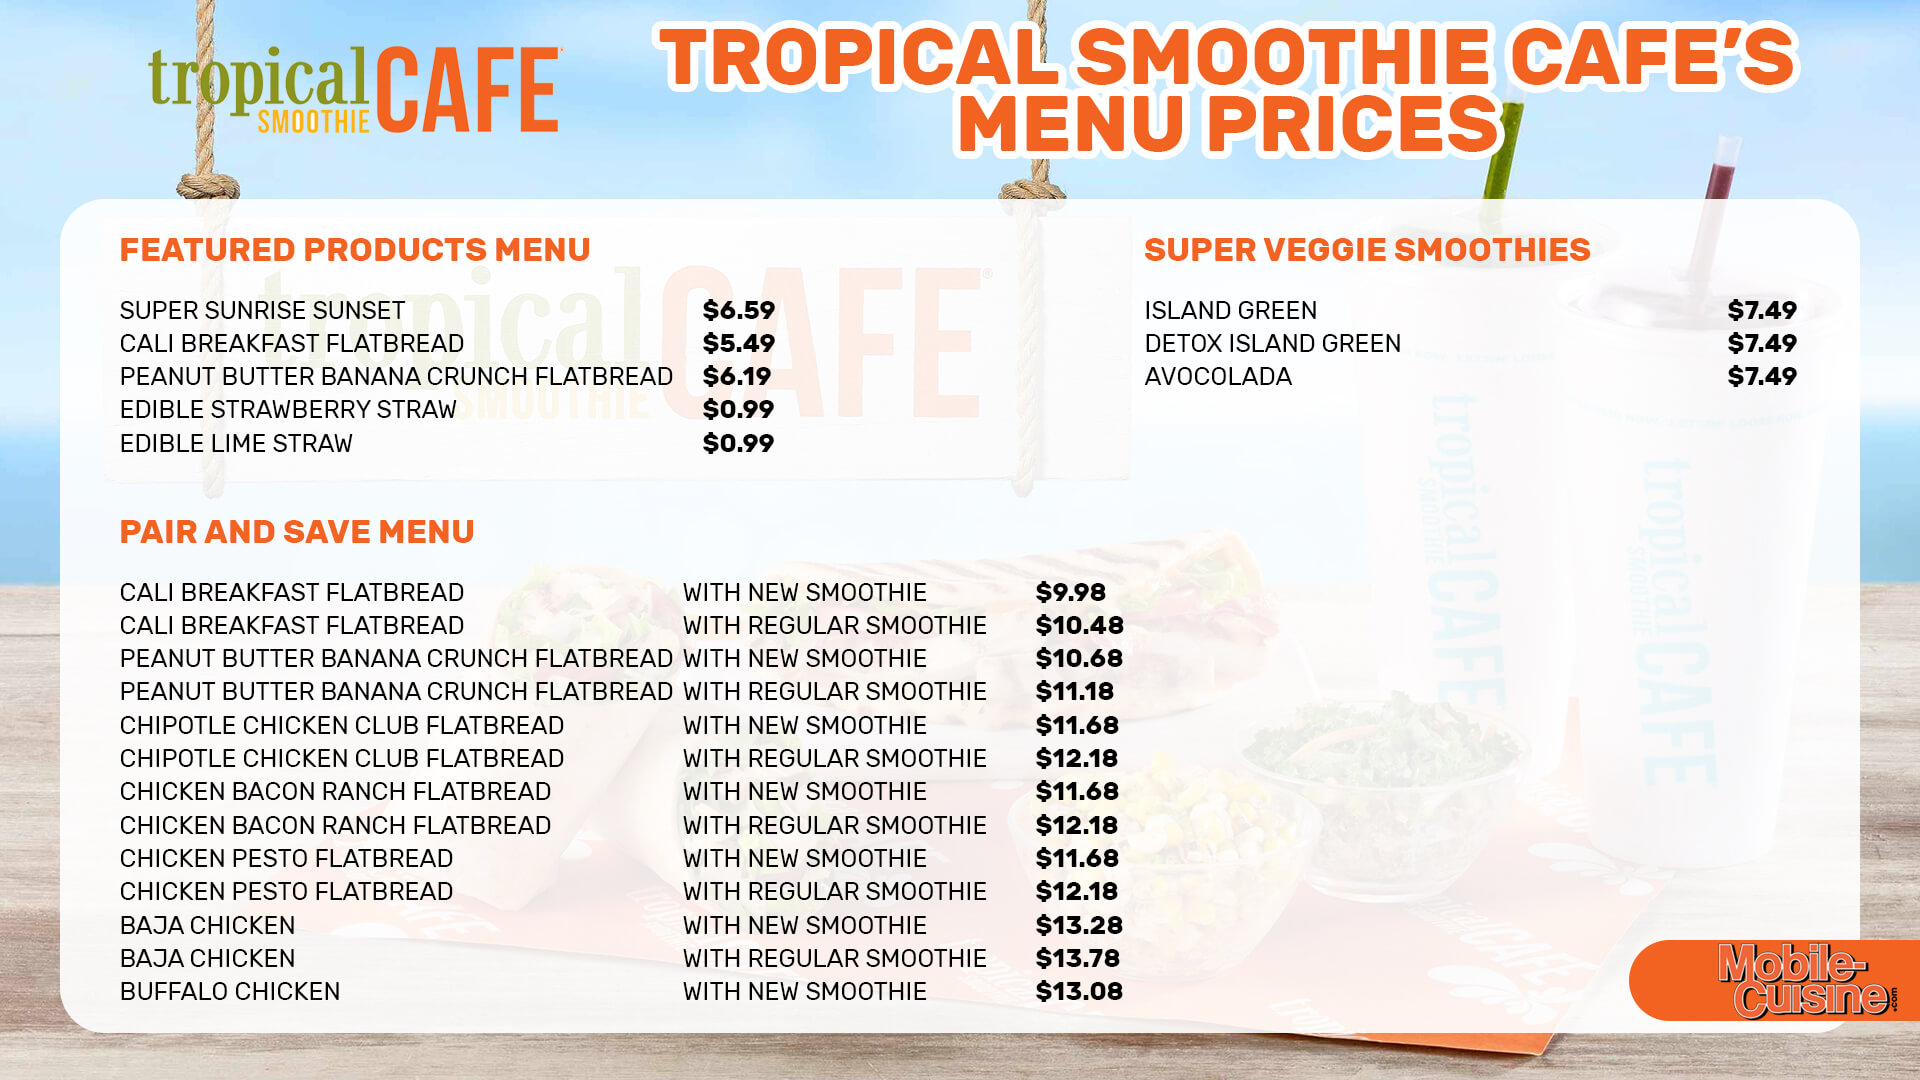 Tropical-Smoothie-Cafe-menu-prices